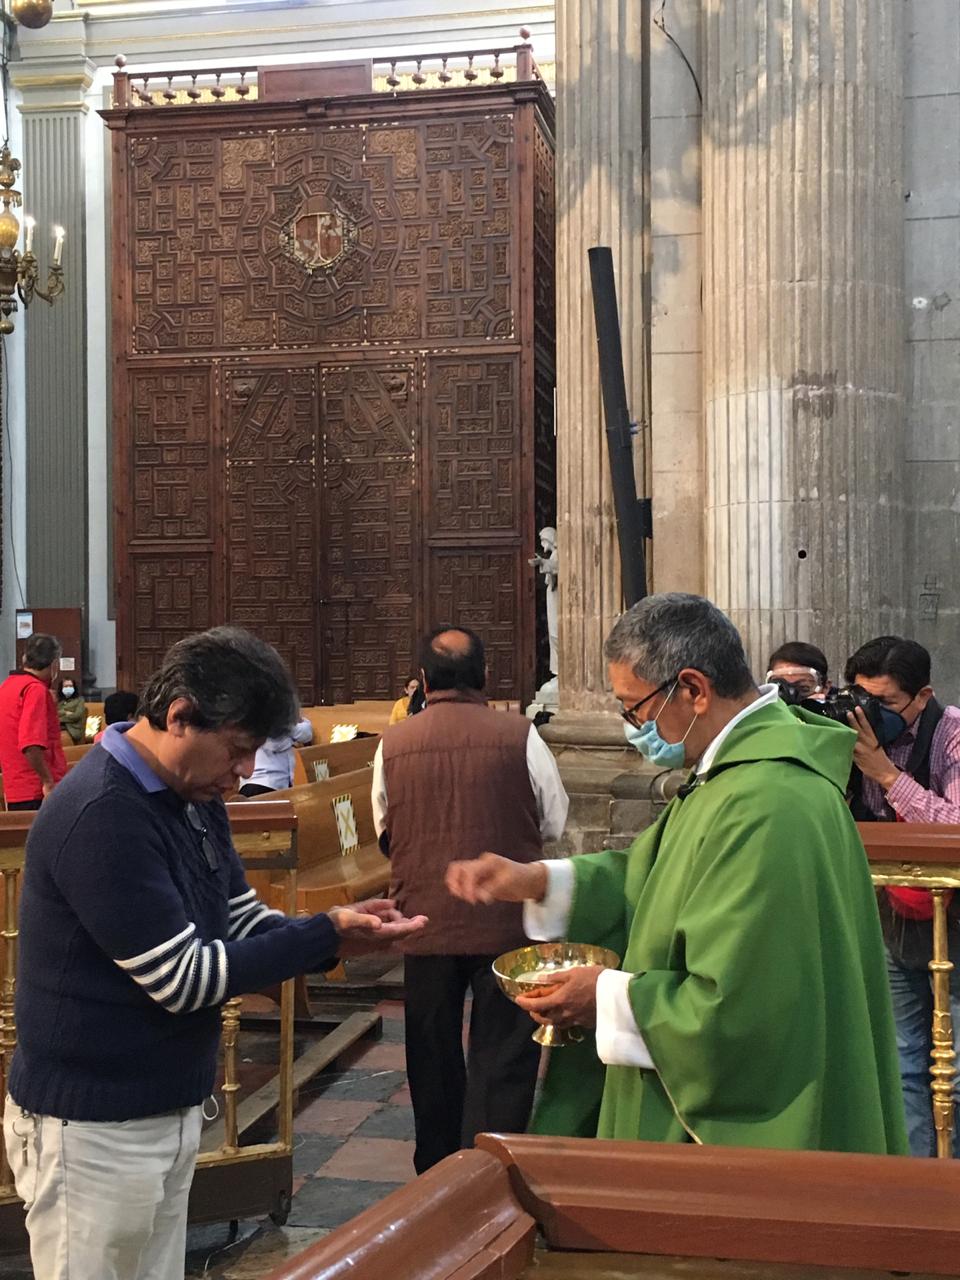 En las iglesias no entra más del 30 por ciento de personas, afirma el rector de la catedral de Puebla